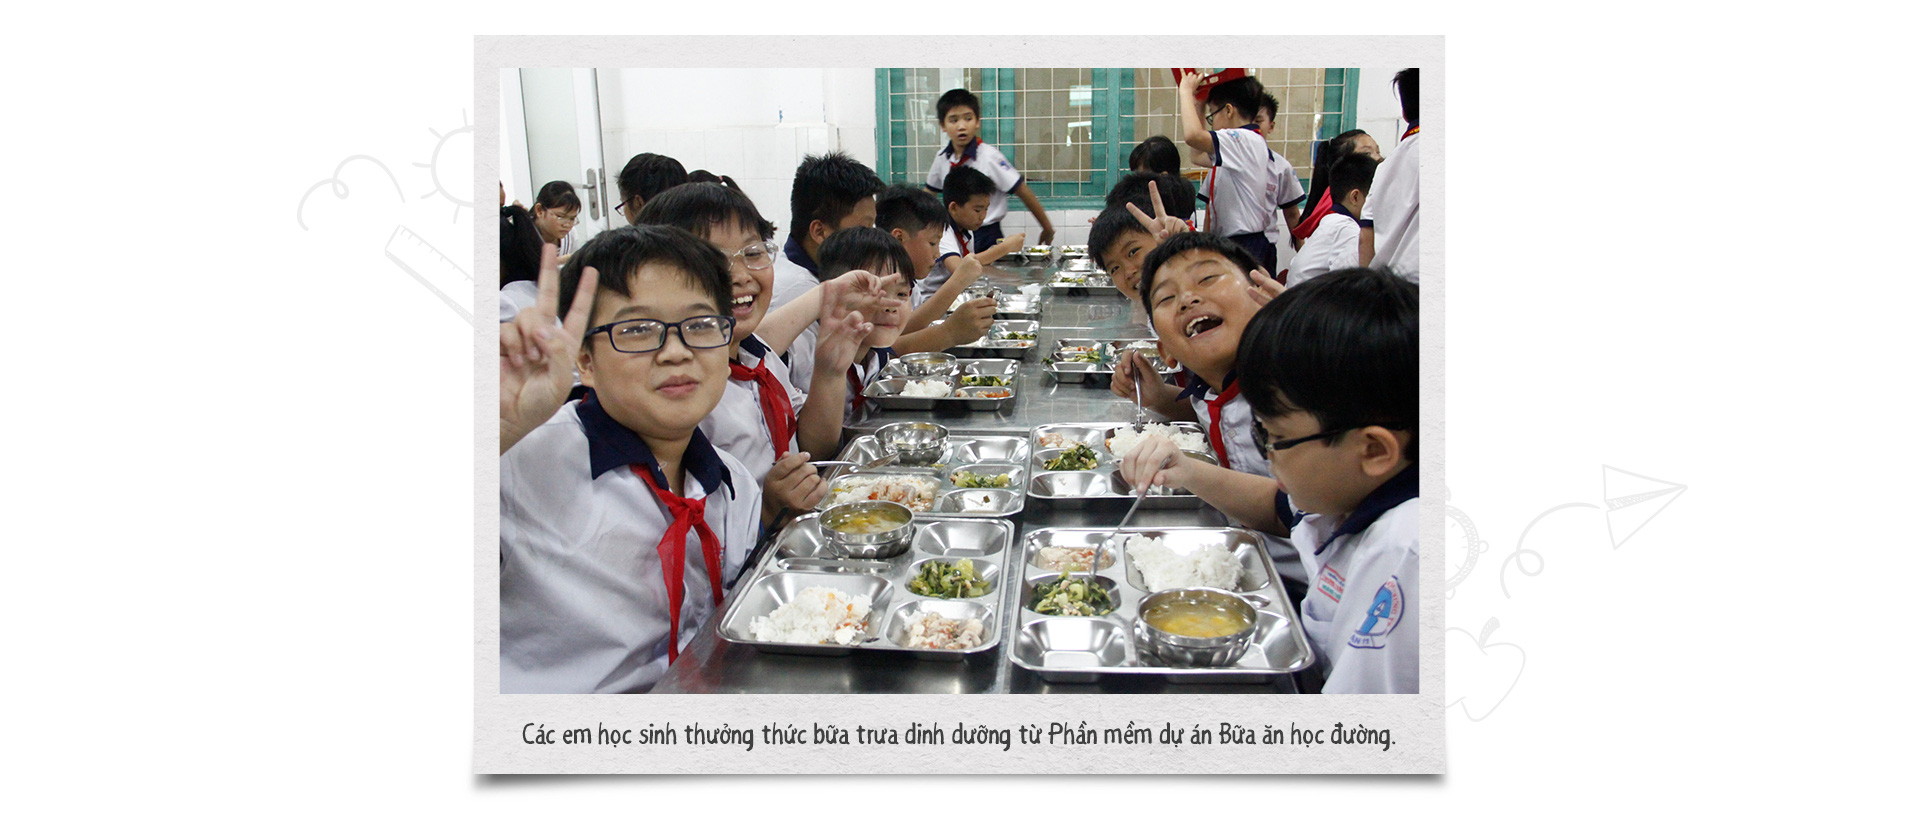 Ajinomoto đóng góp cho sức khoẻ và hạnh phúc người Việt thông qua giáo dục, dinh dưỡng - Ảnh 4.